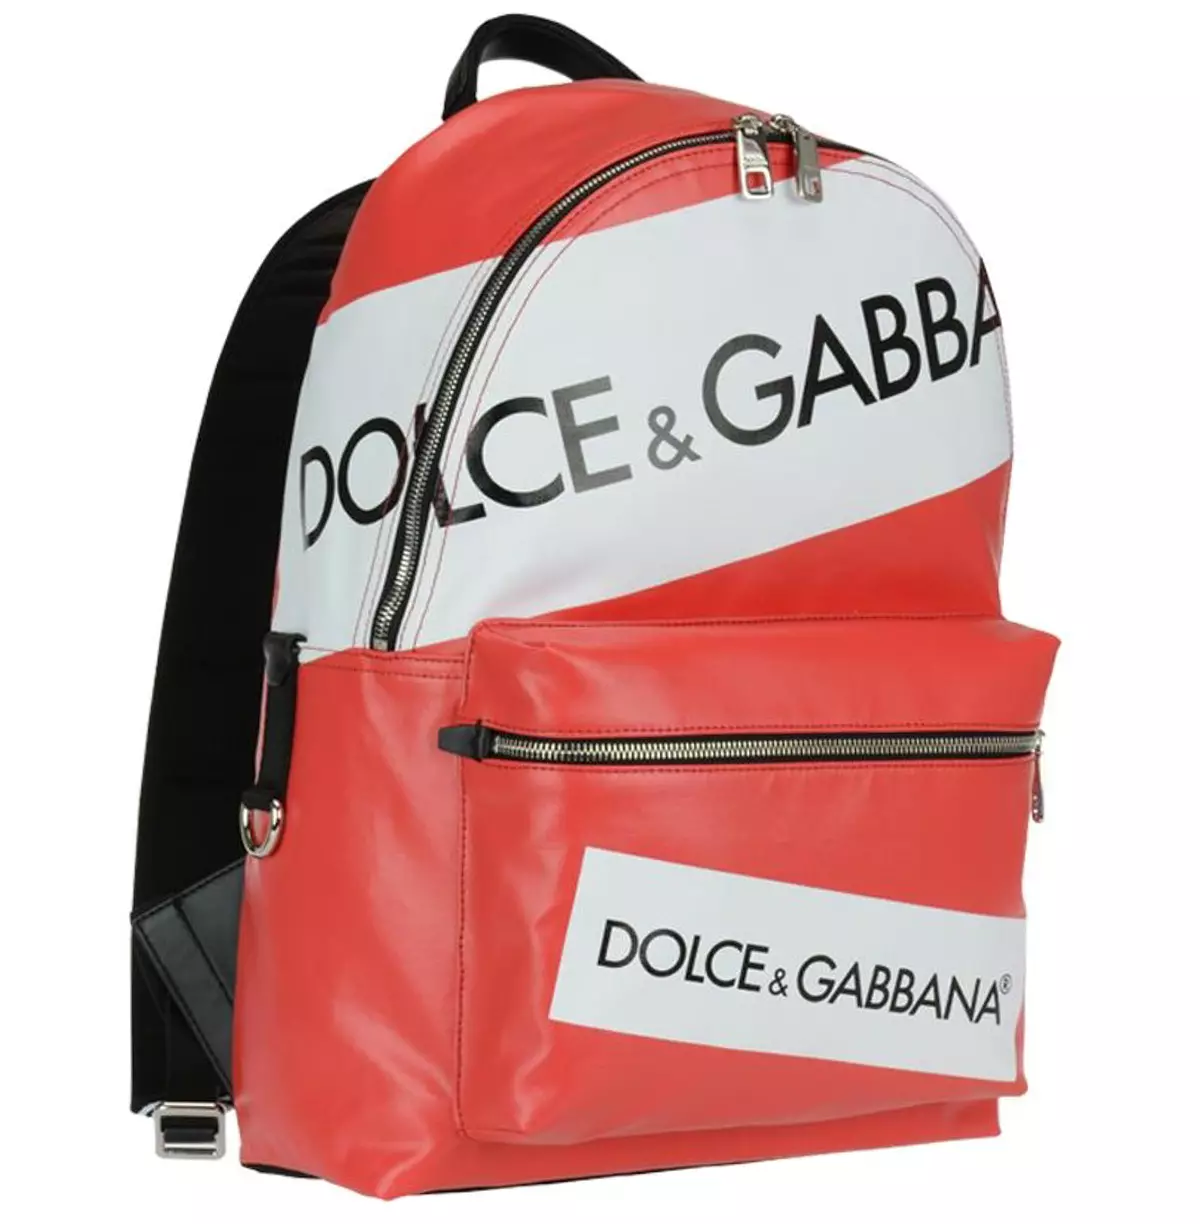 Dolce & Gabbana תרמילים: נשים וגברים, שחור ואדום, תיקי גב תיקים ודגמים אחרים. כיצד להבחין בין המקור מהעותק? 2559_8